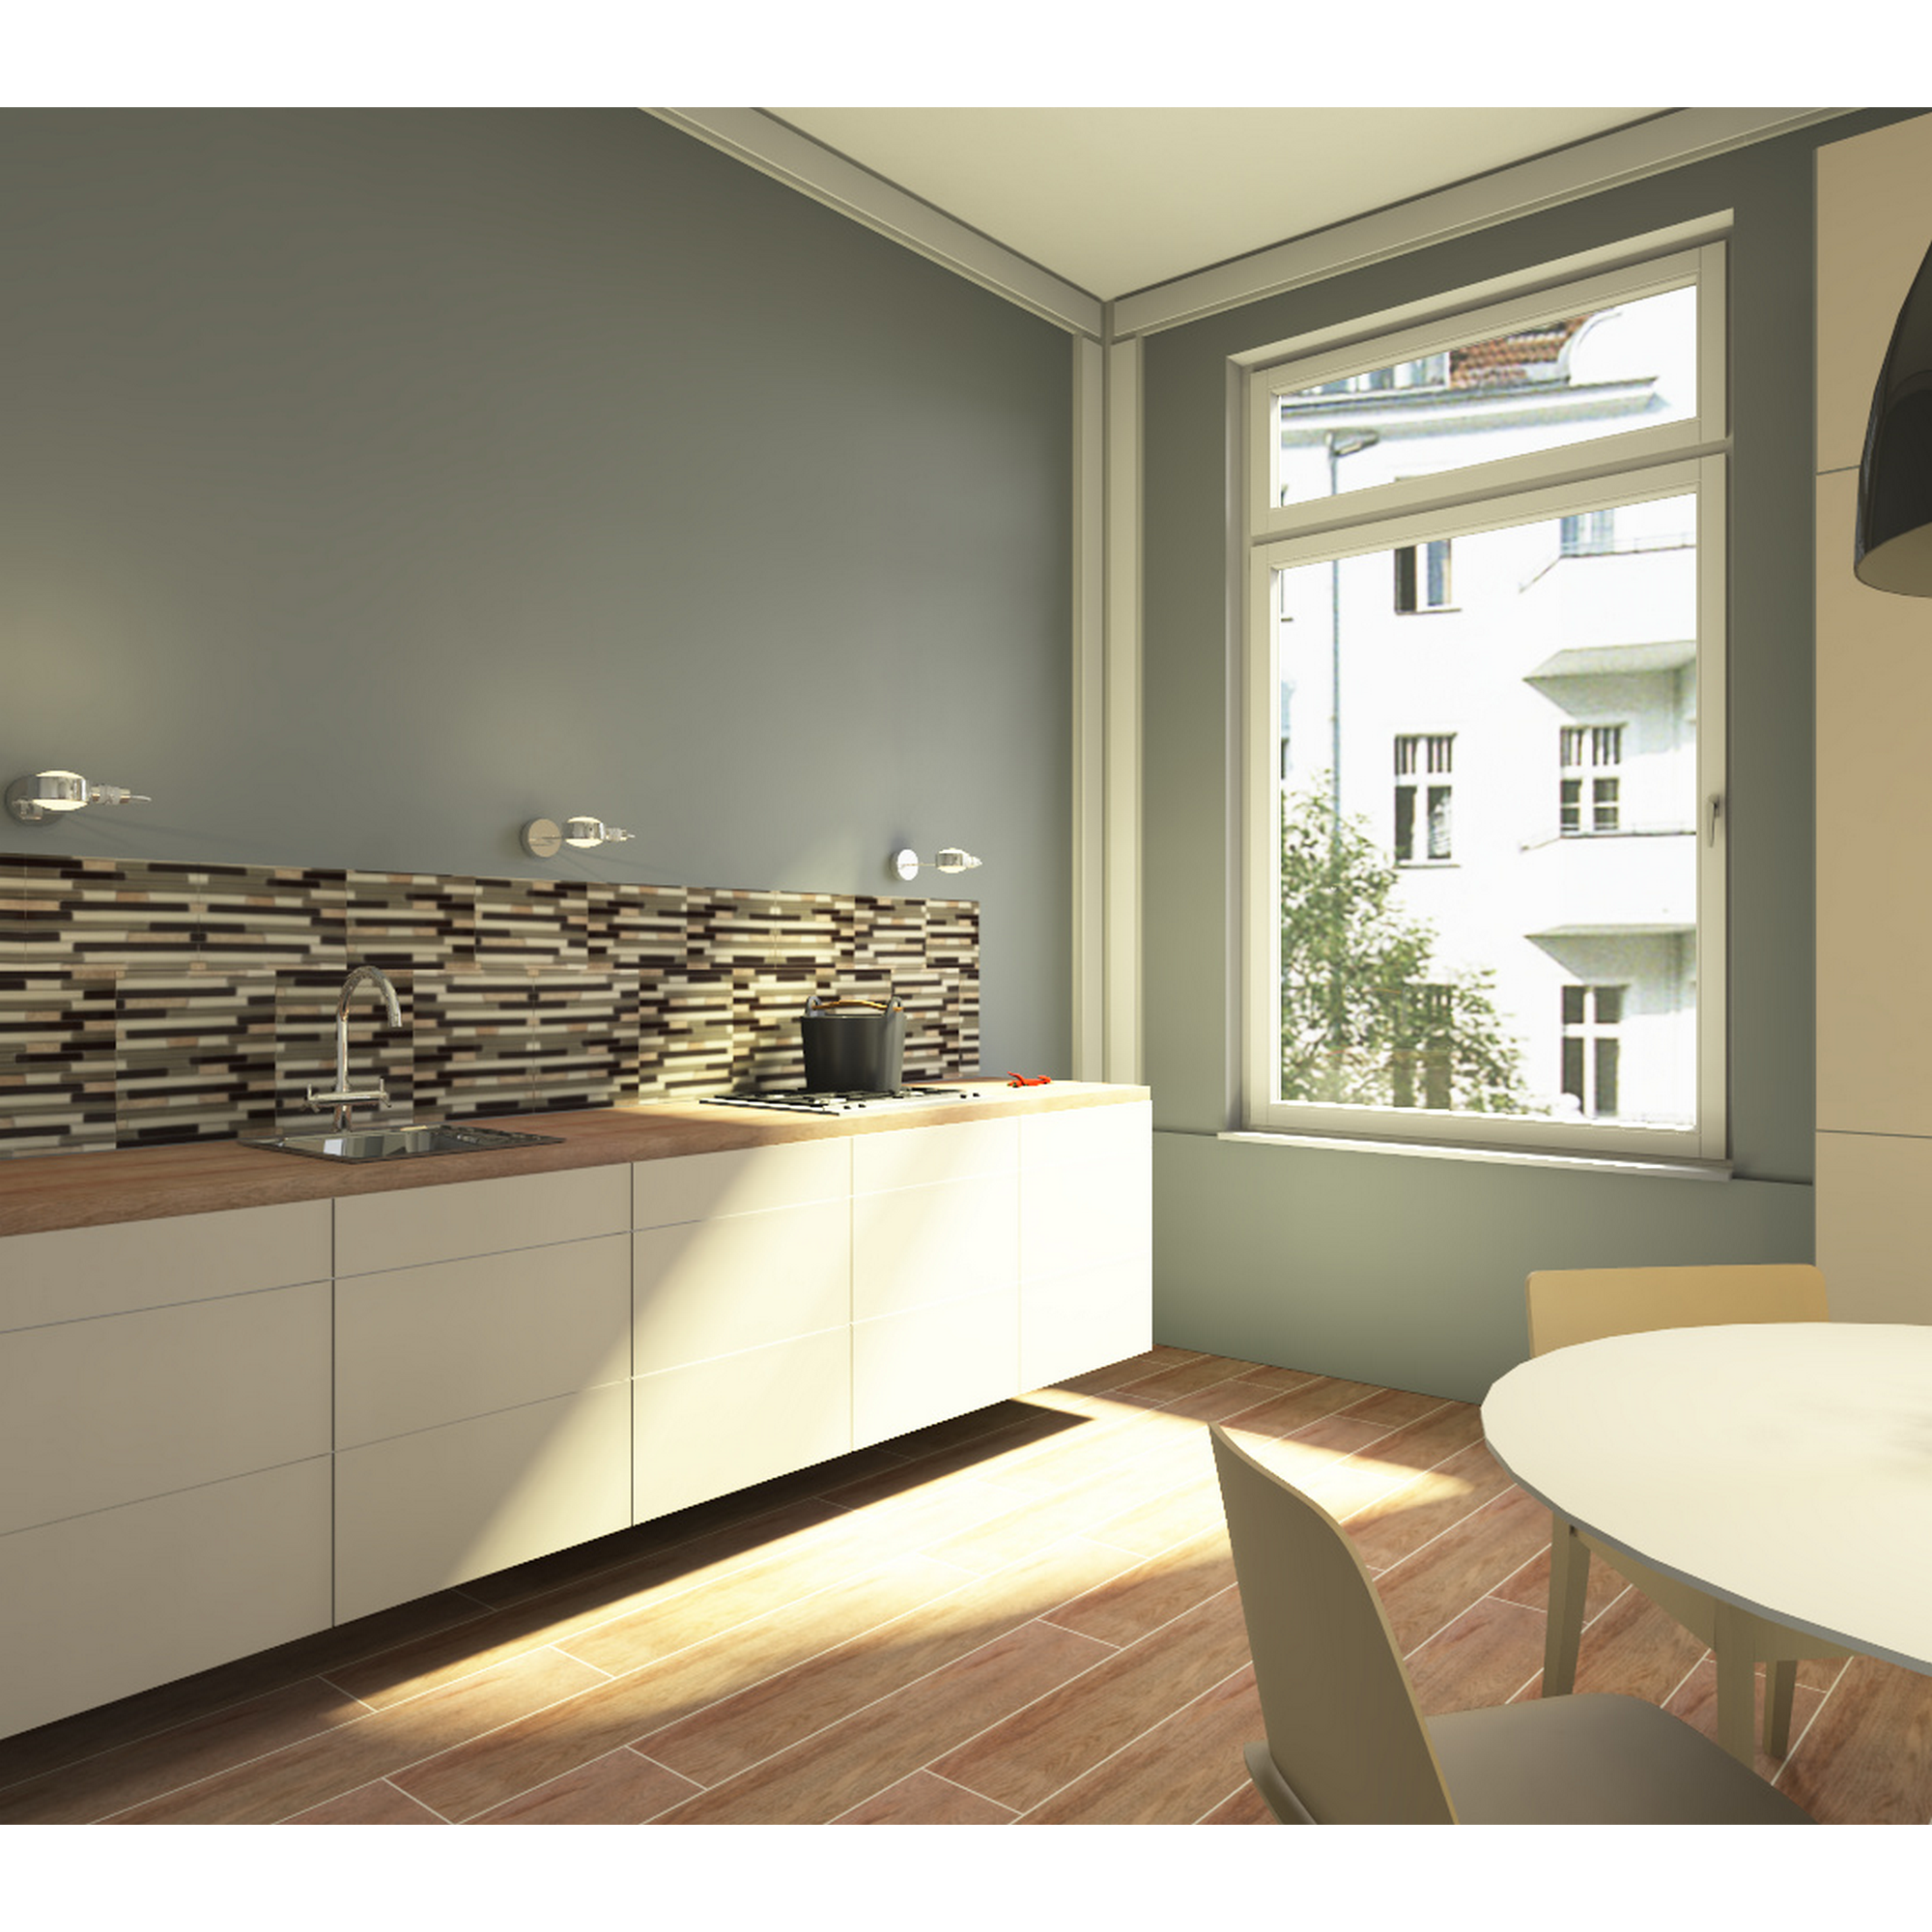 Mosaikfliese 'Easyglue' selbstklebend Glas/Naturstein beige matt, 30,5 x 30,5 cm + product picture